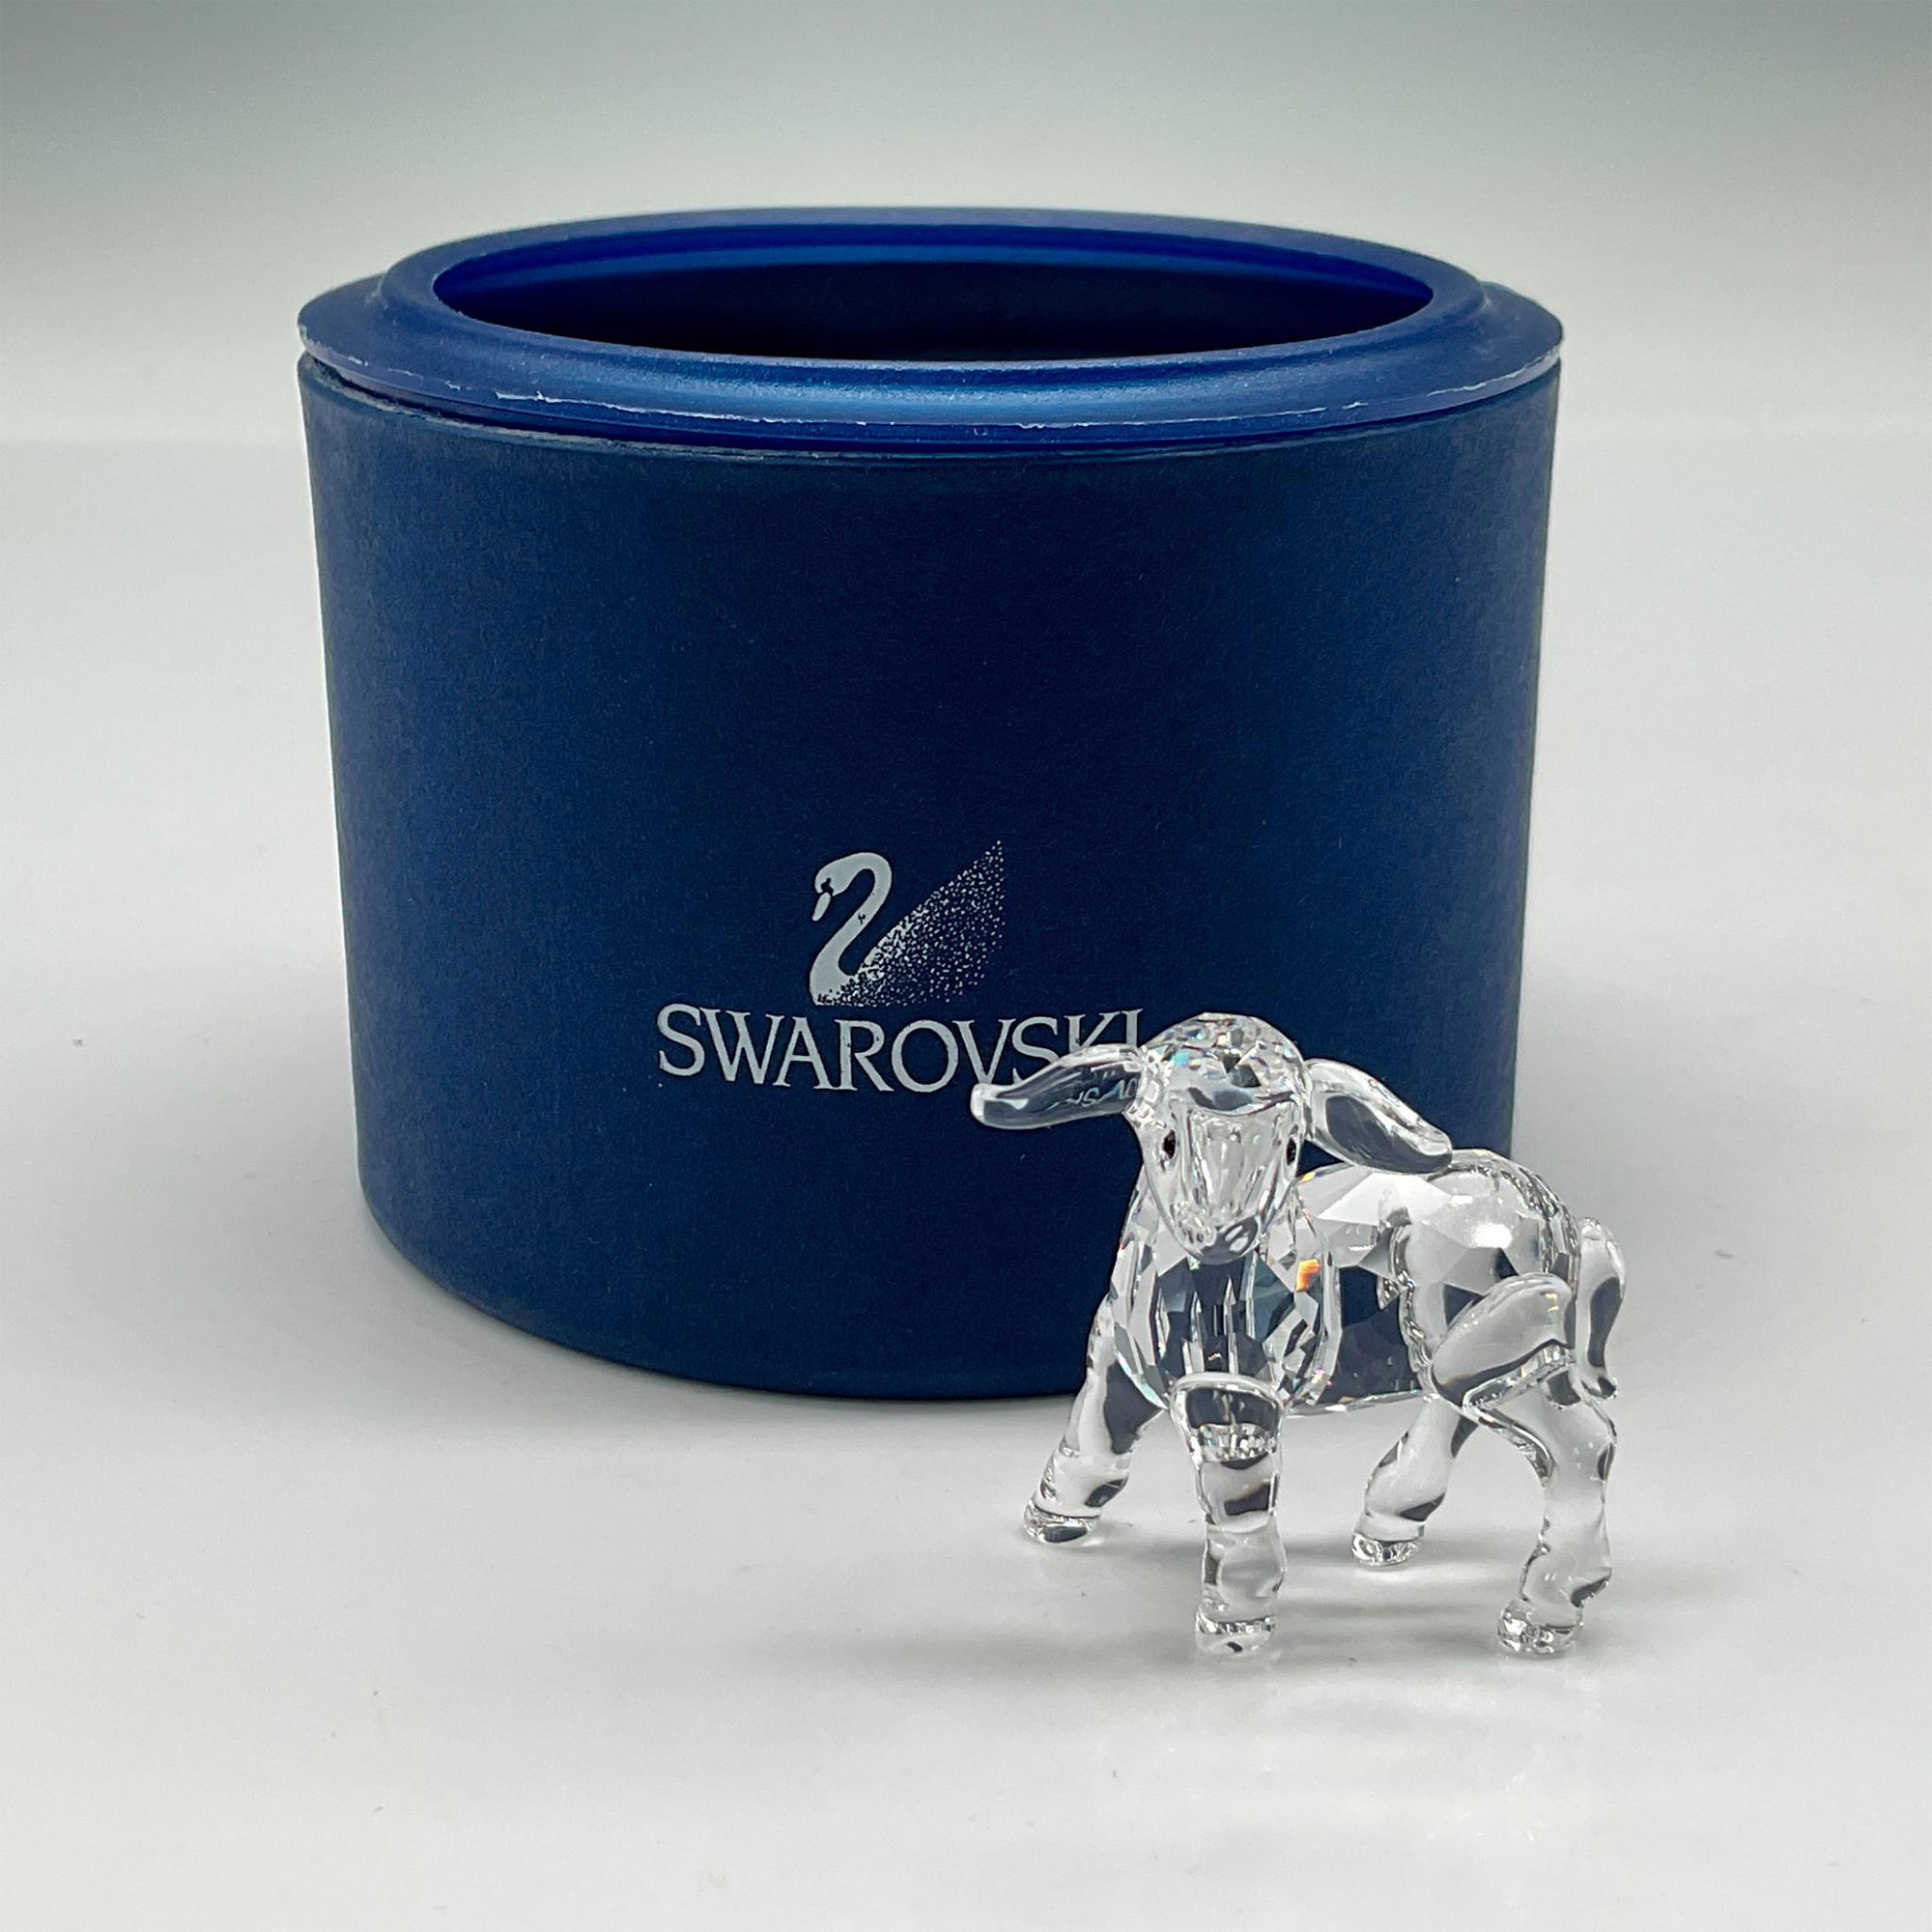 Swarovski Crystal Figurine, Little Lamb - Image 4 of 4